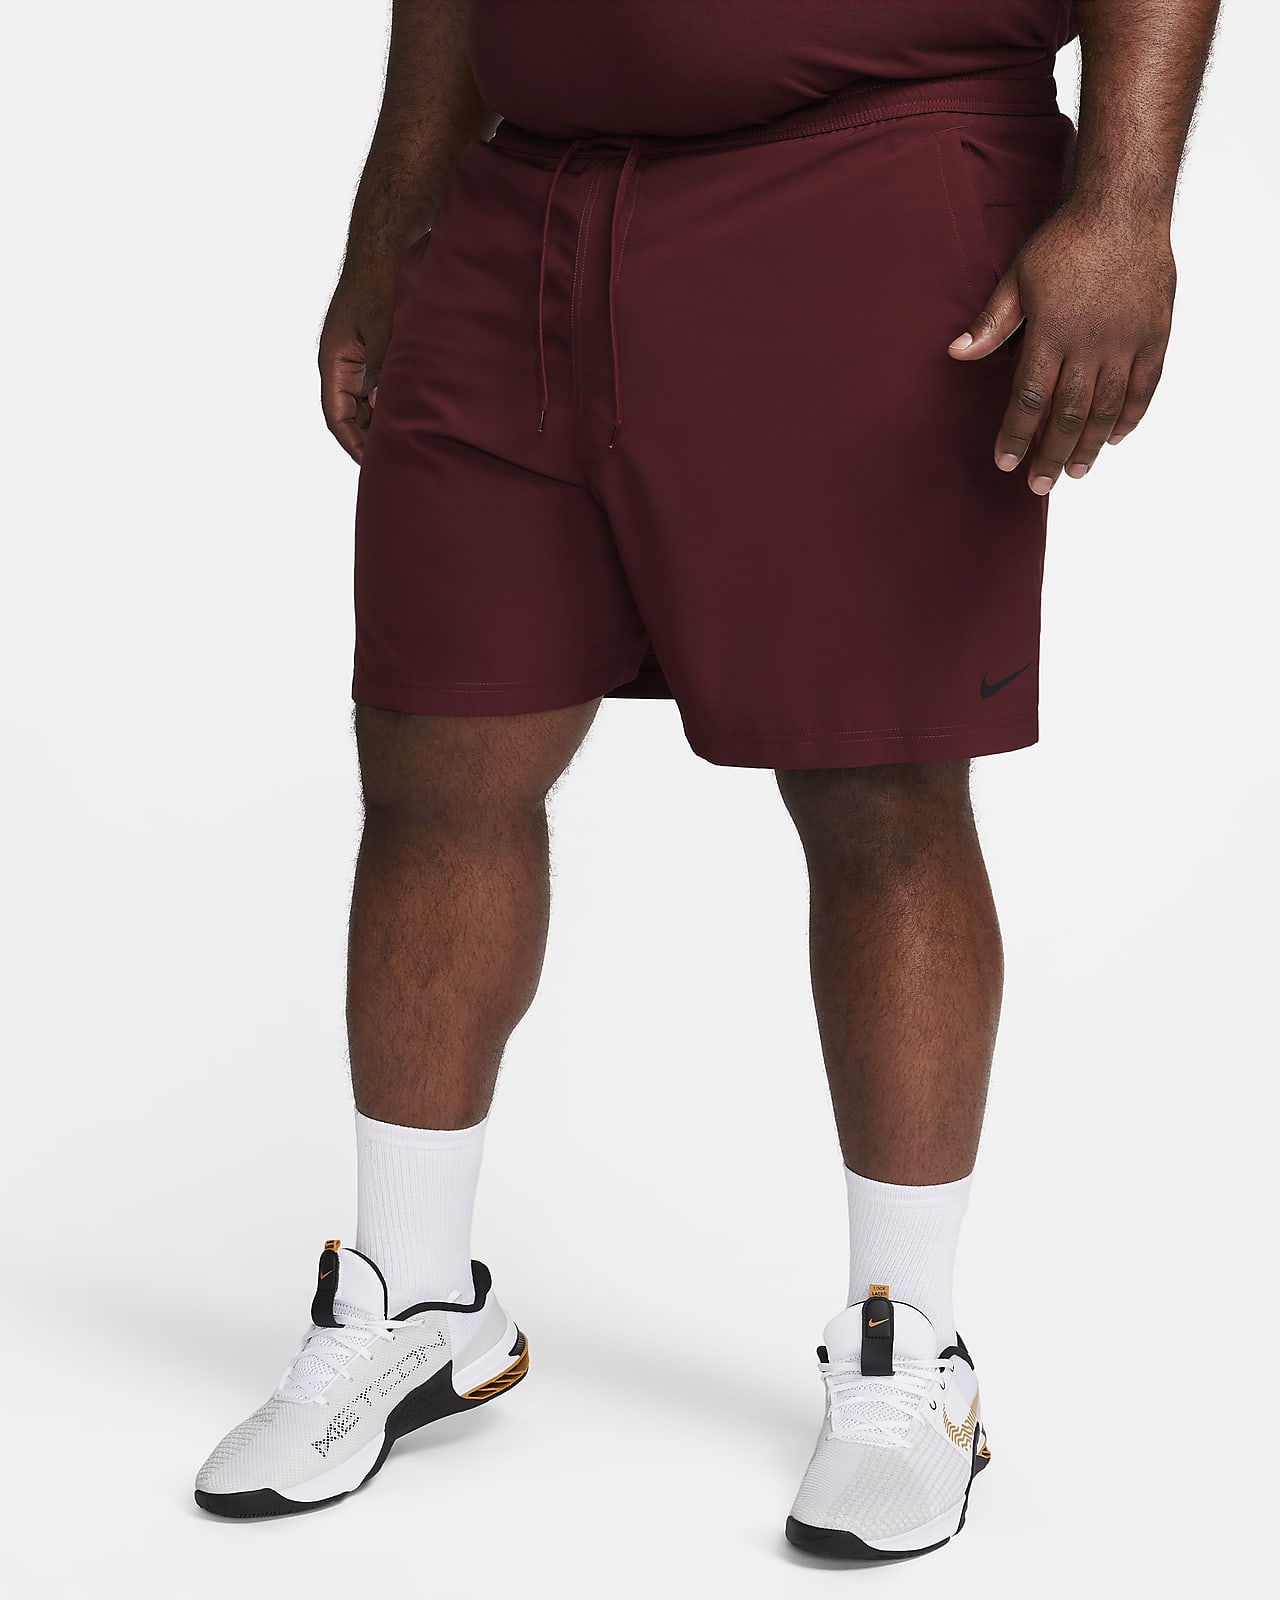 Men's Sportswear Shorts. Nike CA